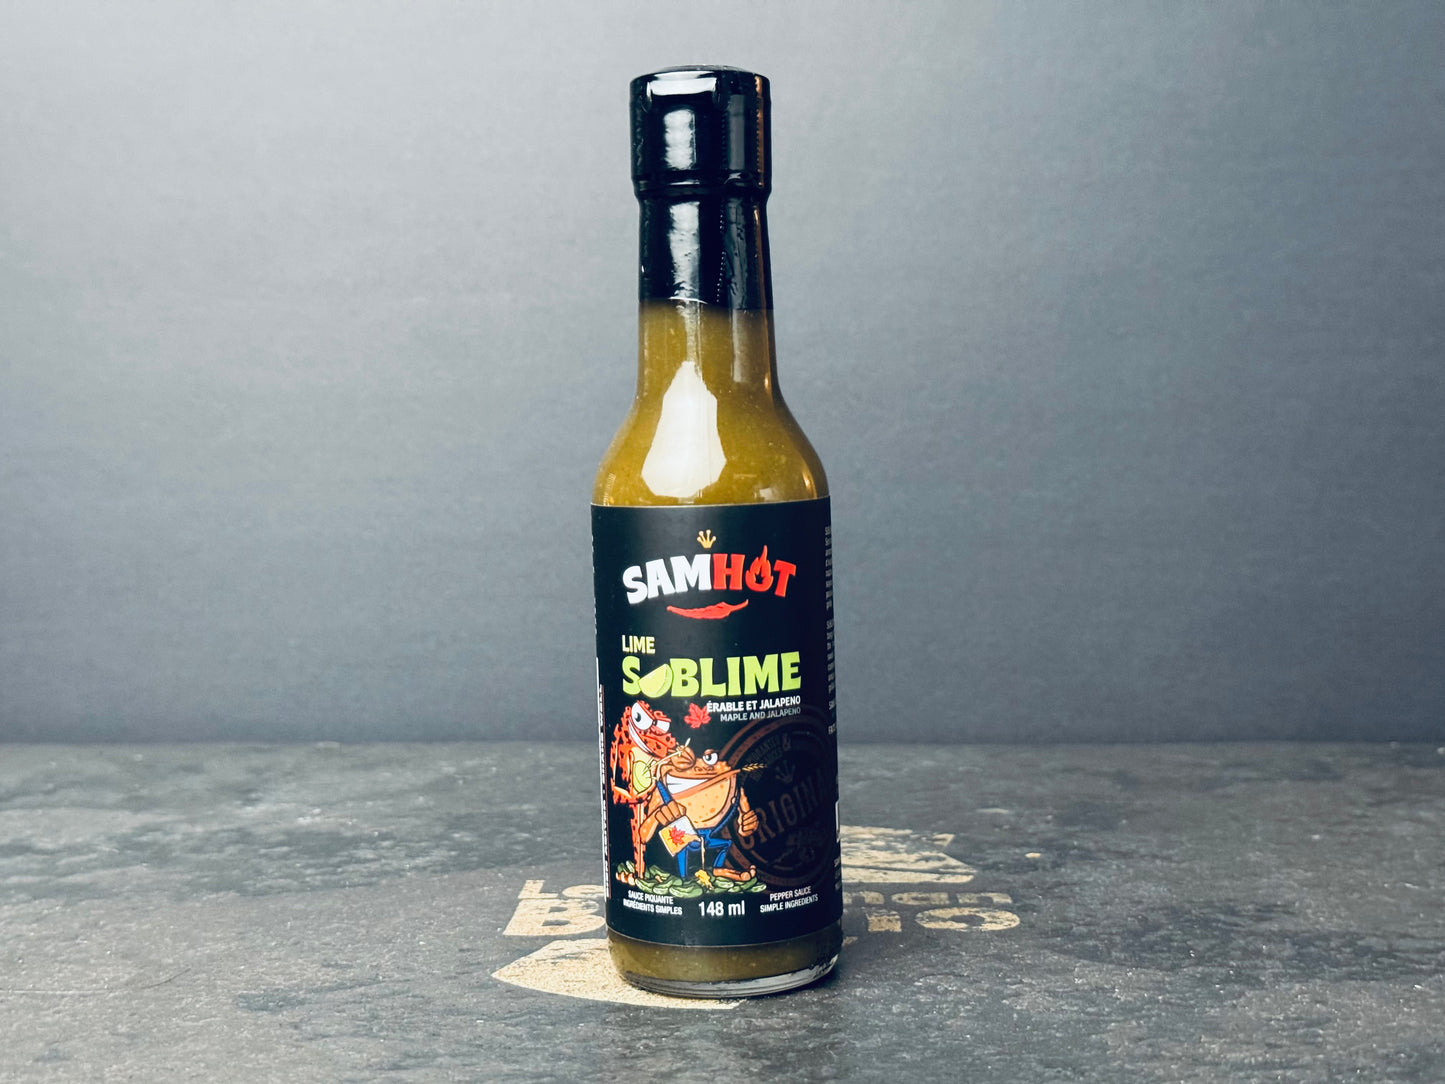 Sauce piquante SAMHOT: Lime Sublime